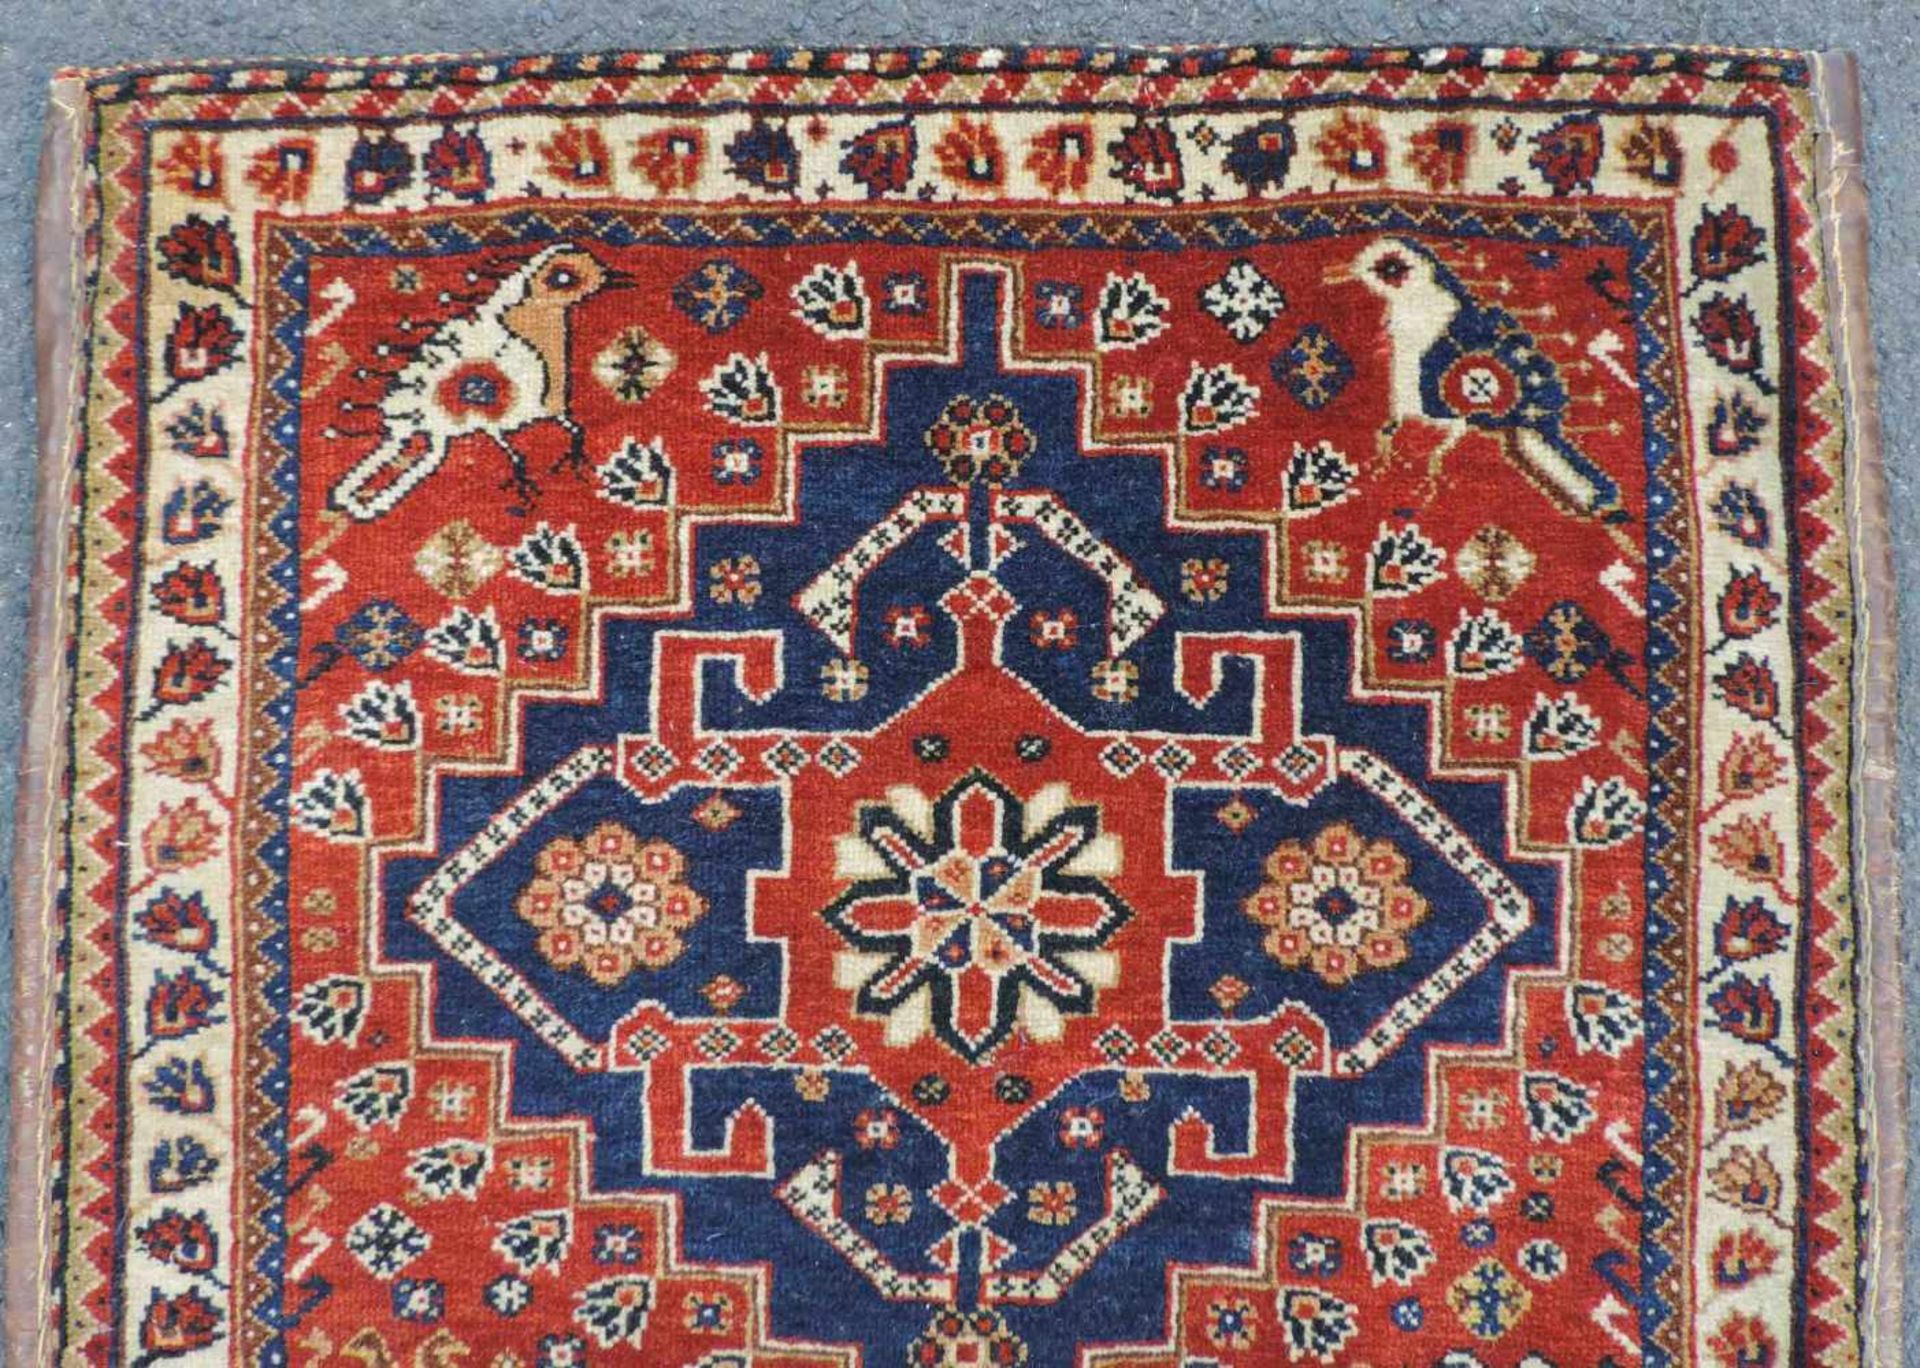 Qashqai / Kaschkai Perserteppich. Iran. Antik um 1910. Naturfarben.61 cm x 62 cm. Handgeknüpft. - Bild 3 aus 4